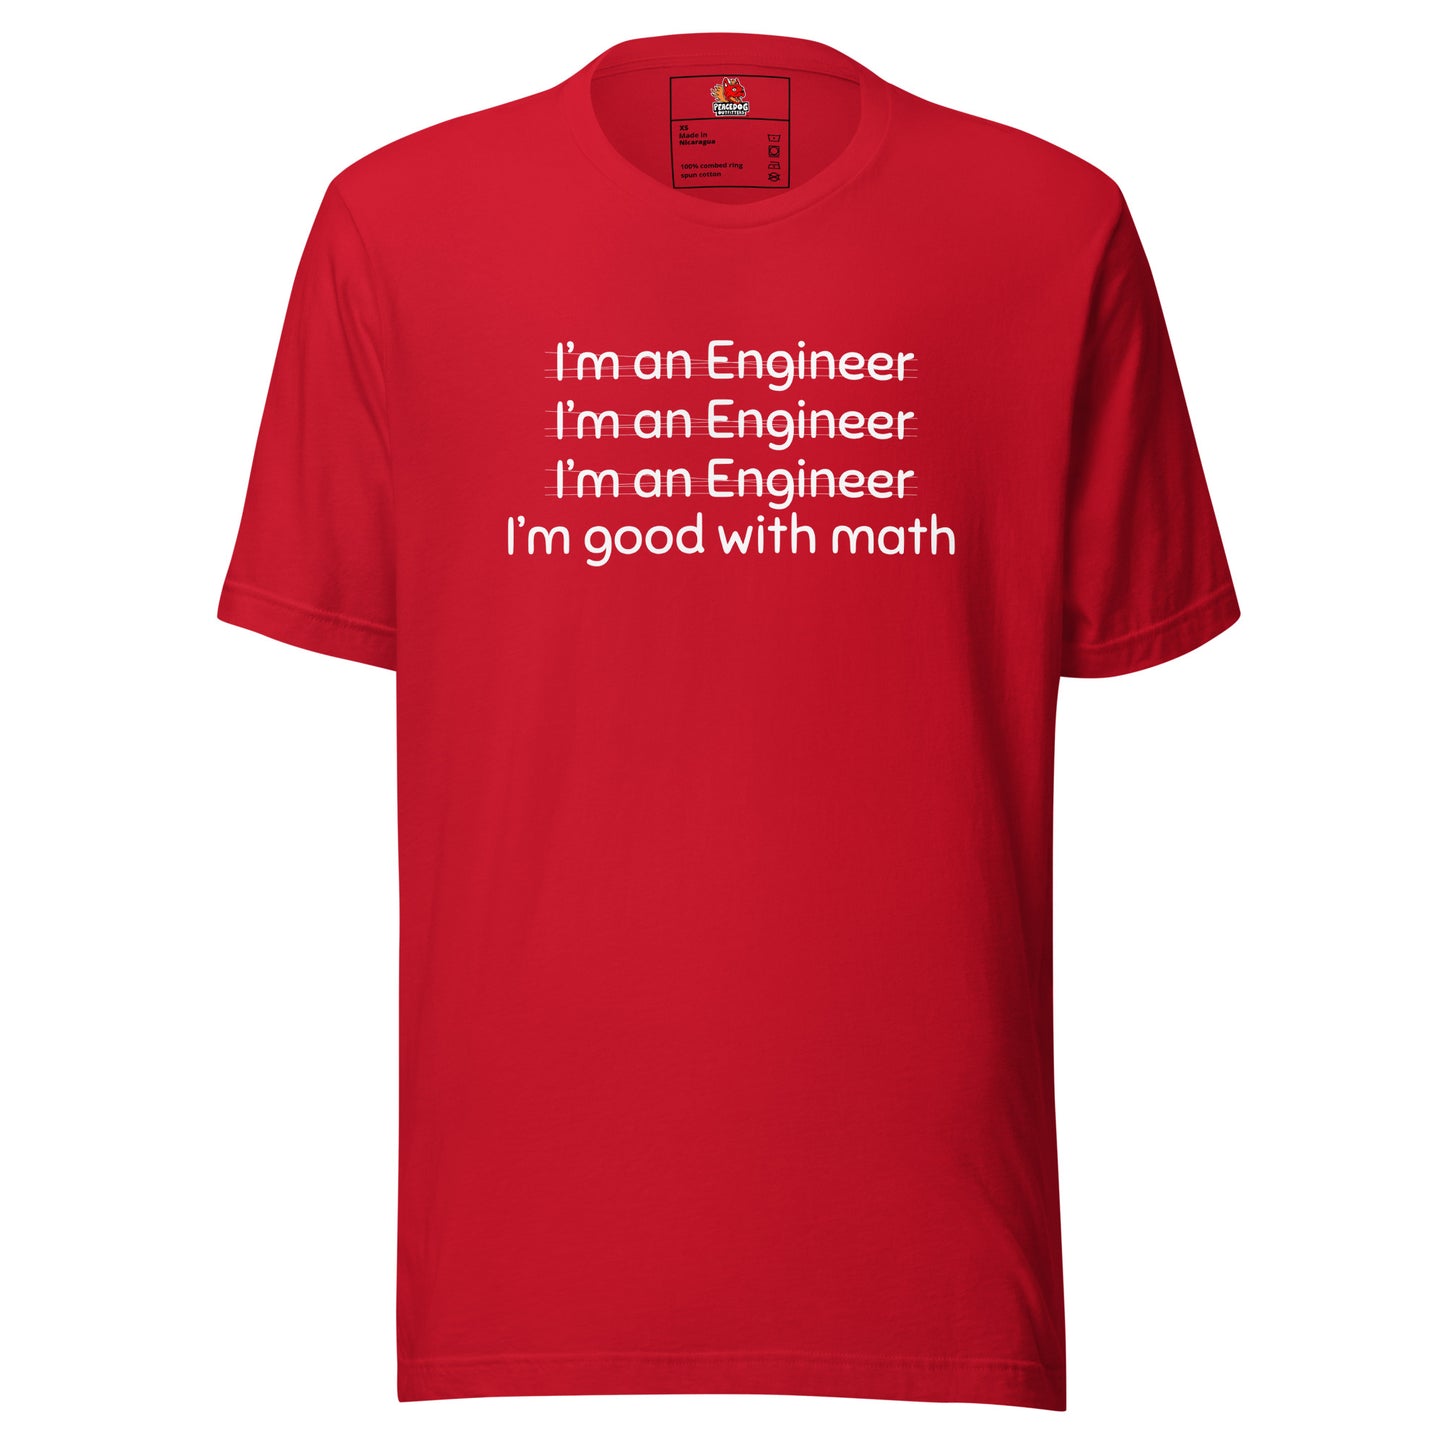 I'm an Engineer T-shirt